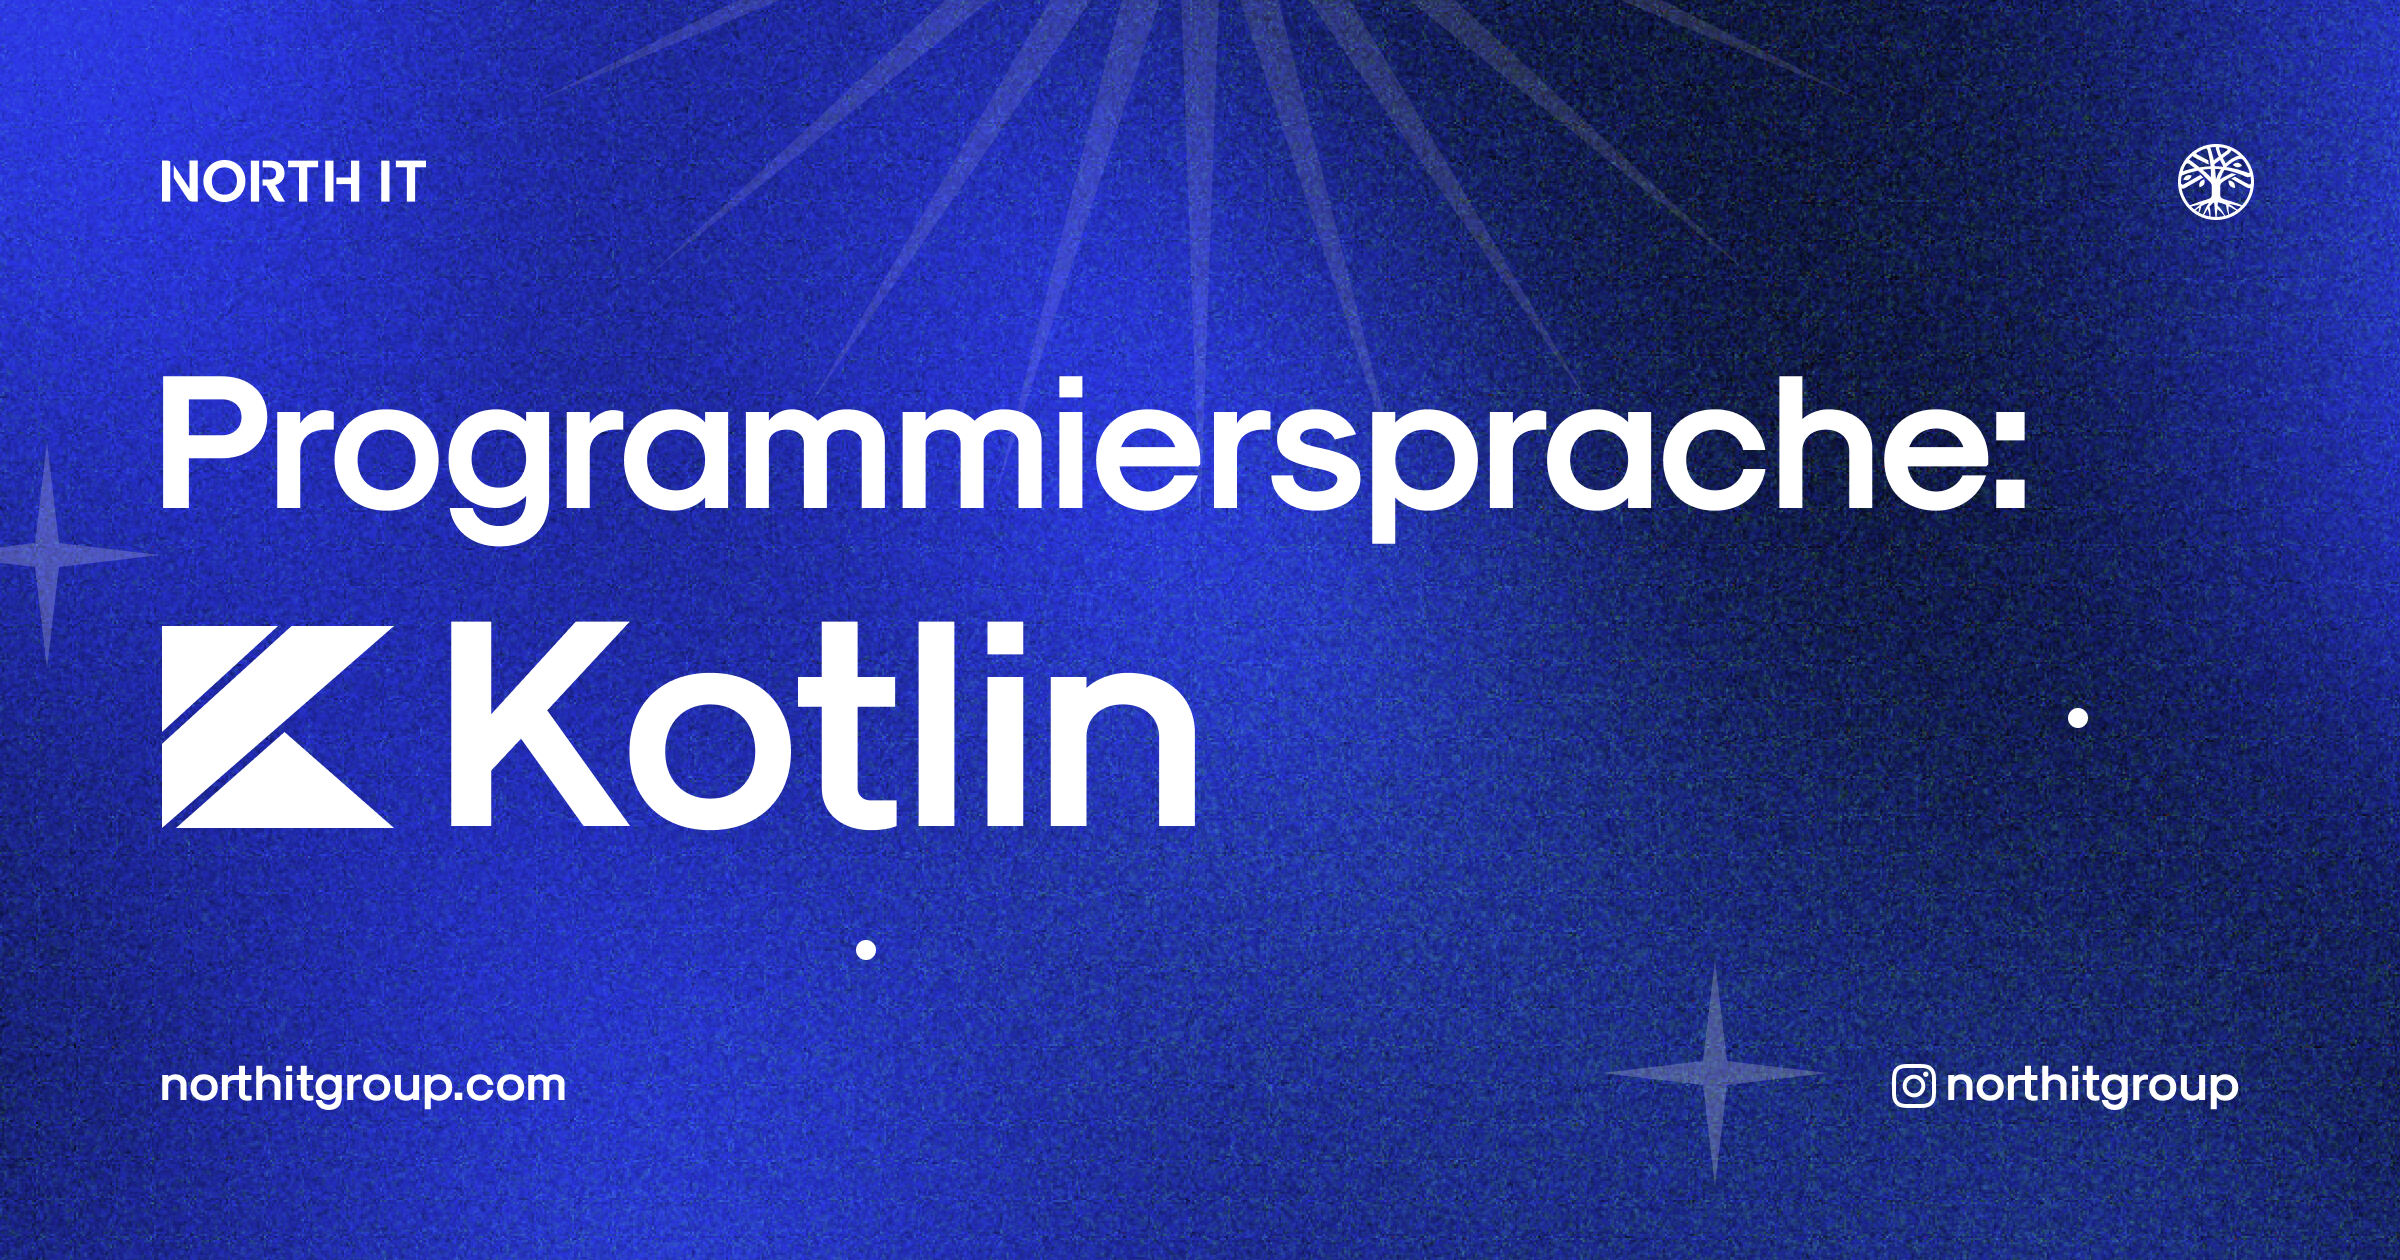 Kotlin: rediscover programming